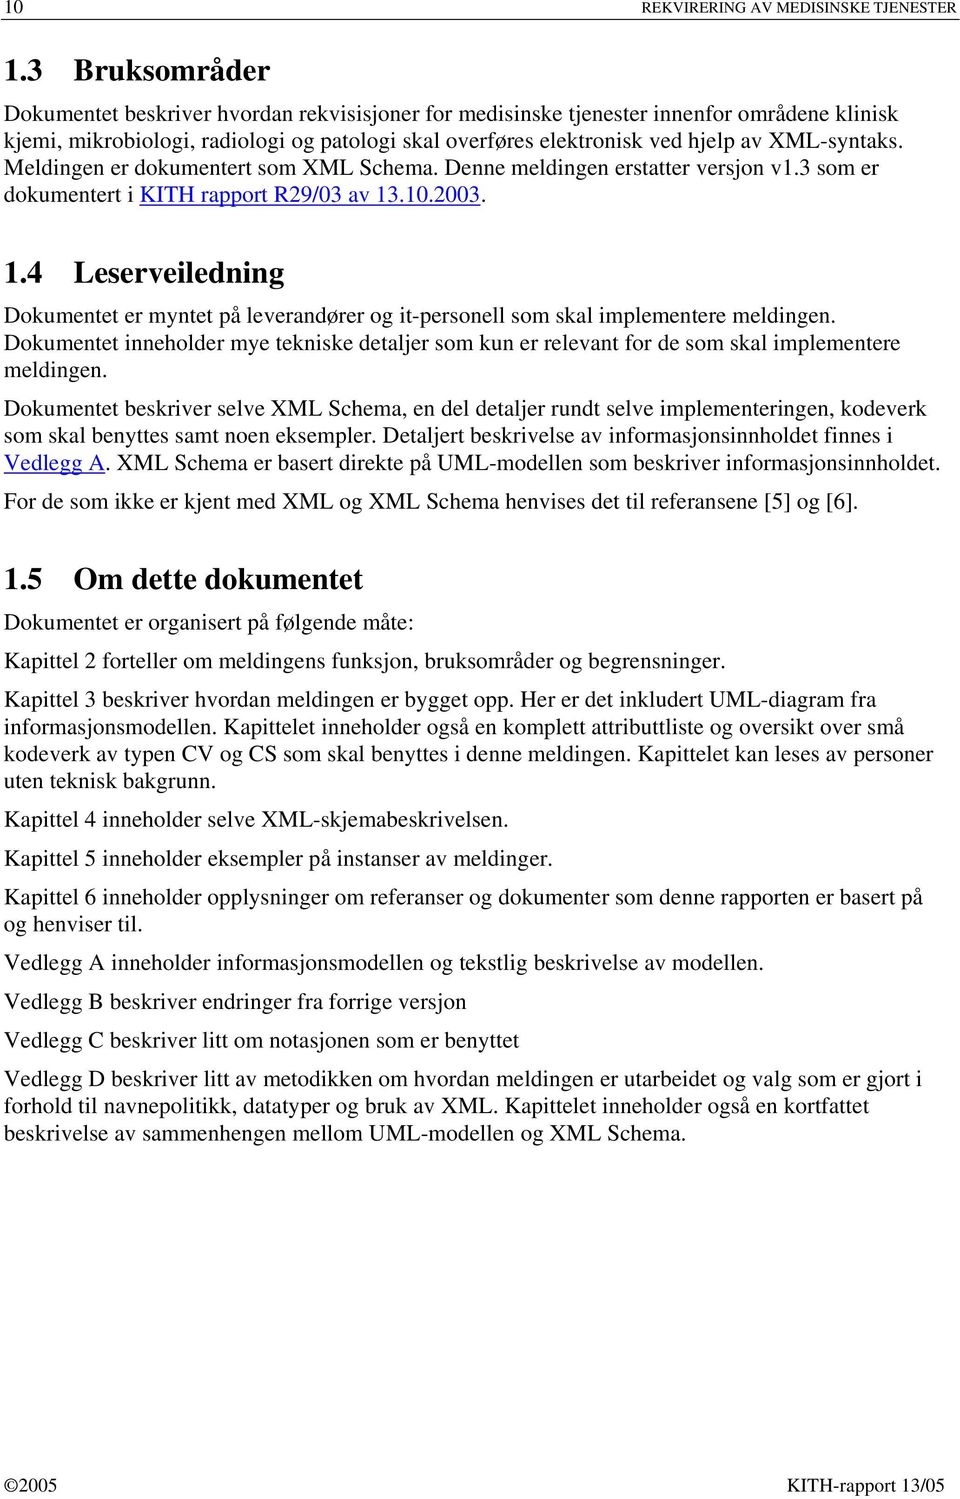 XML-syntaks. Meldingen er dokumentert som XML Schema. Denne meldingen erstatter versjon v1.3 som er dokumentert i KITH rapport R29/03 av 13